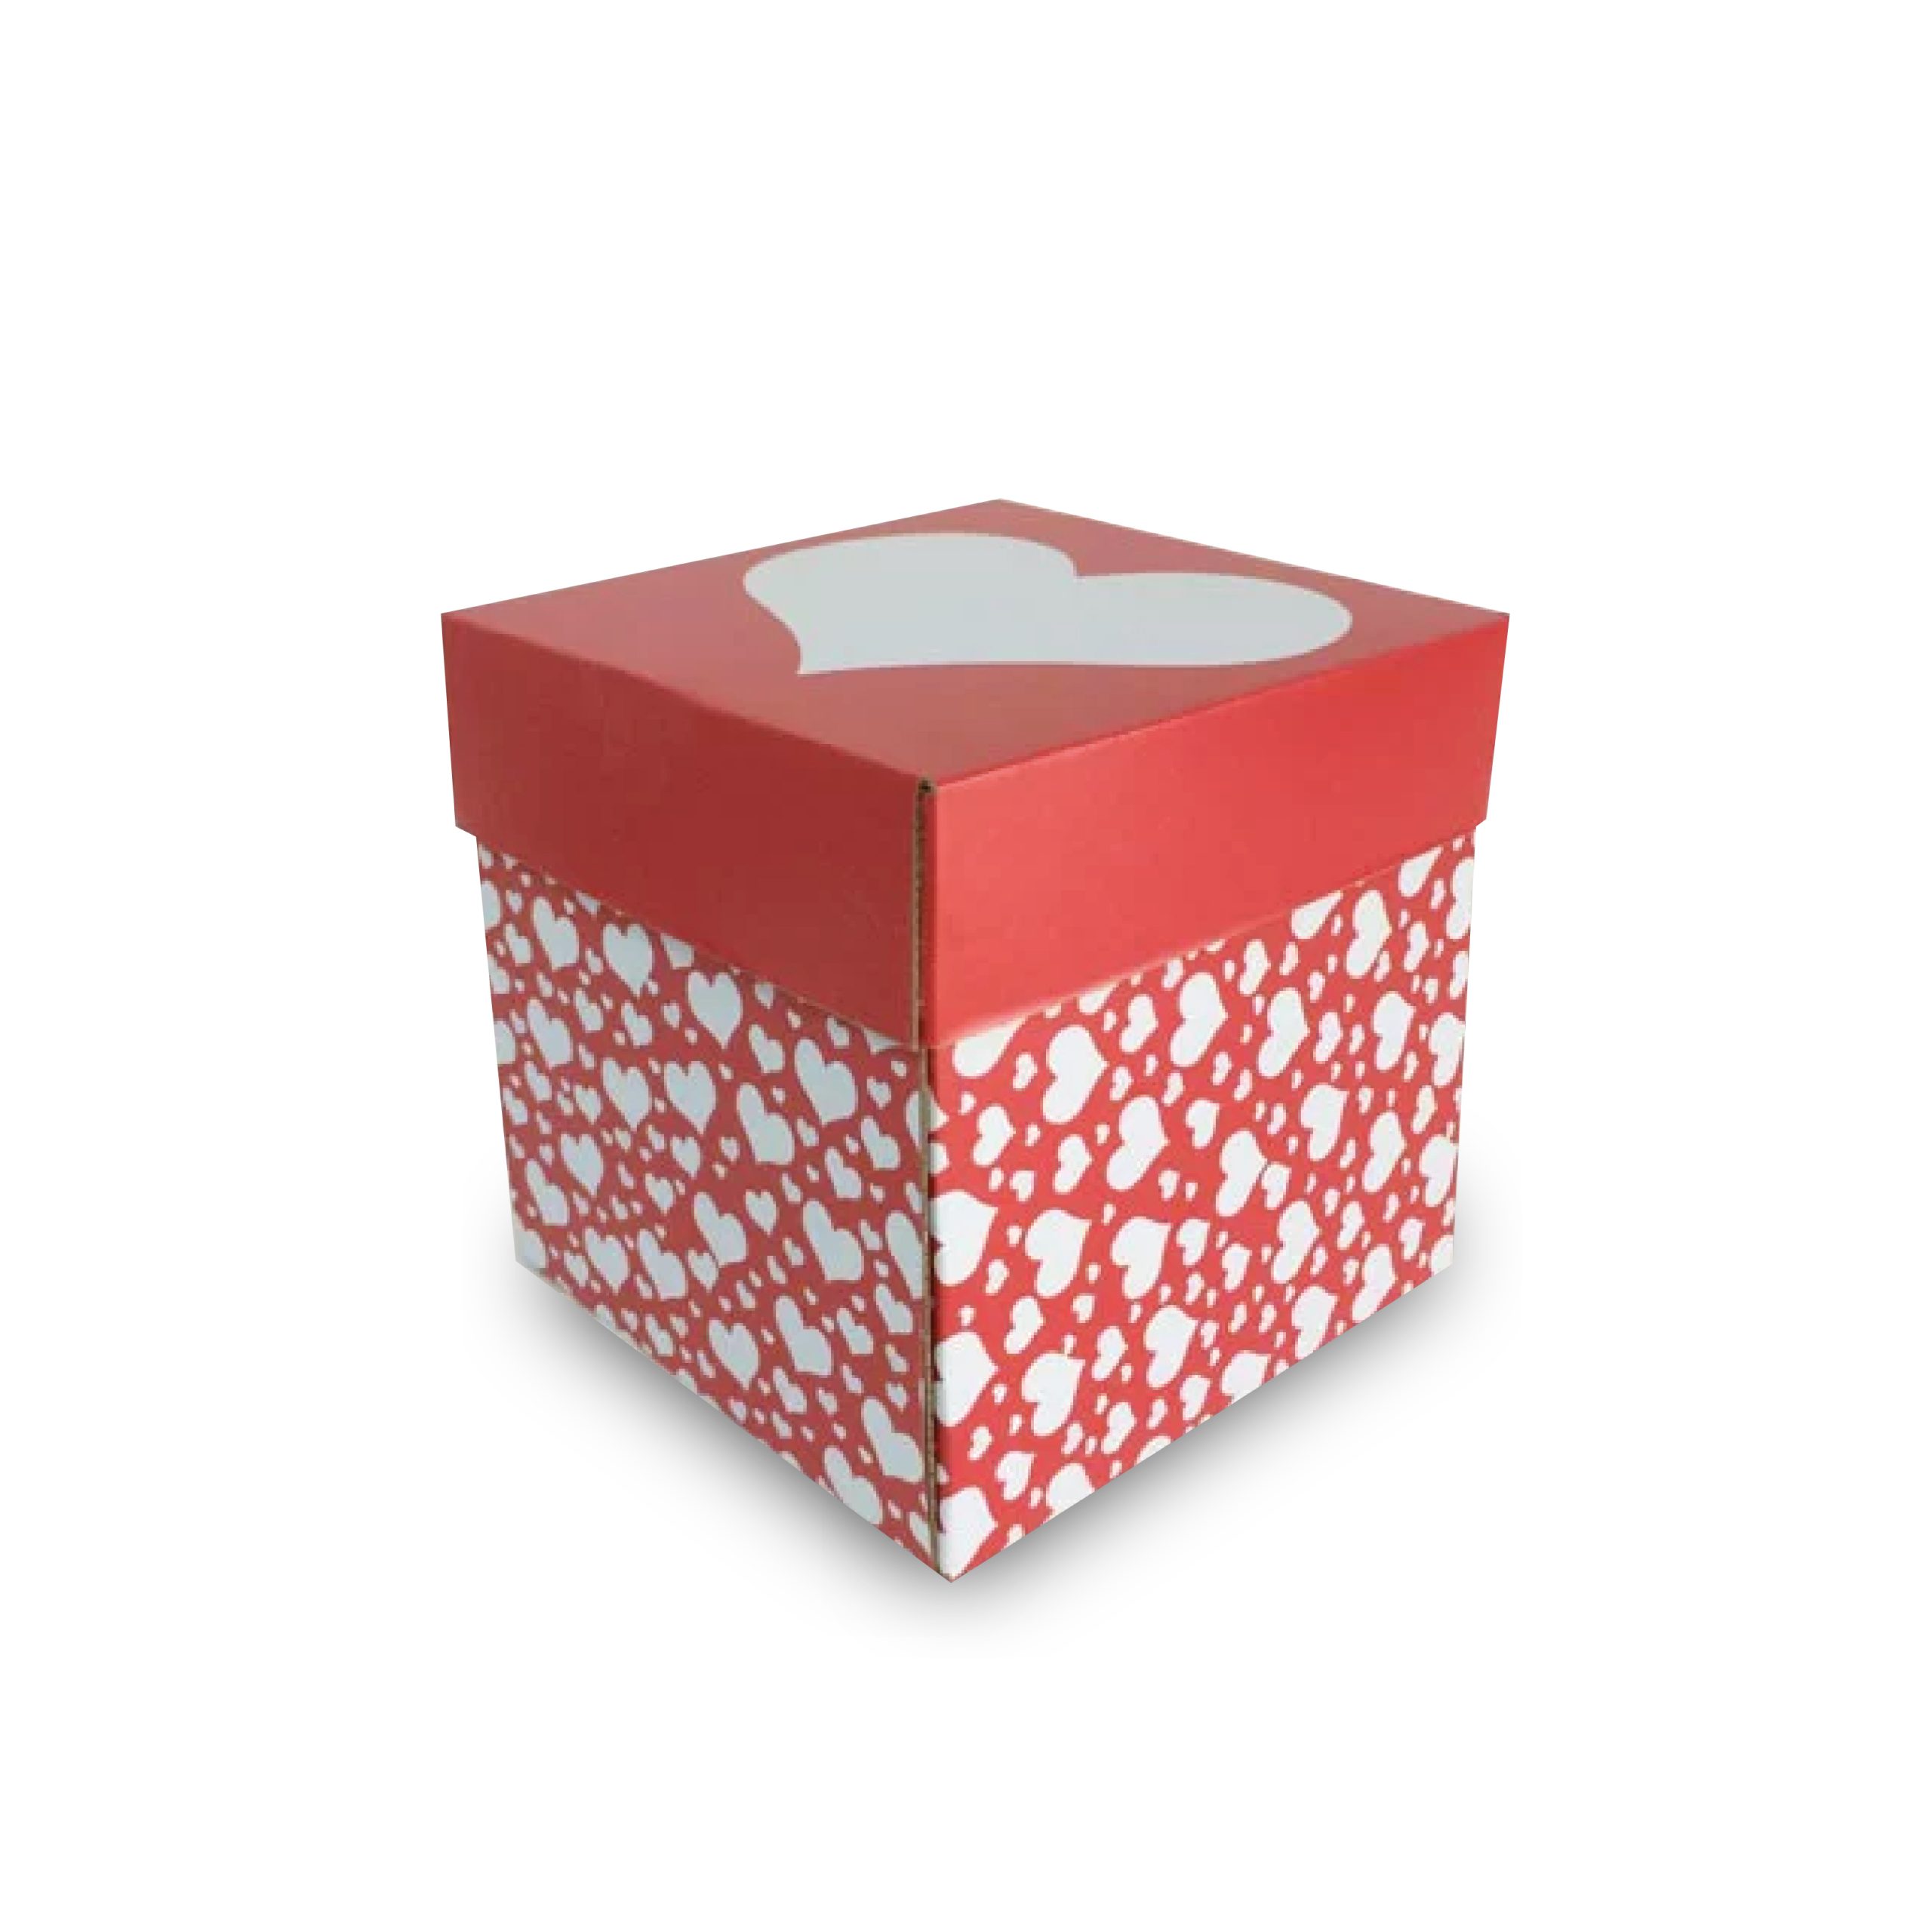 Caja de regalo  Cajas personalizadas, Hacer cajas de regalo, Cajas de  regalo decoradas